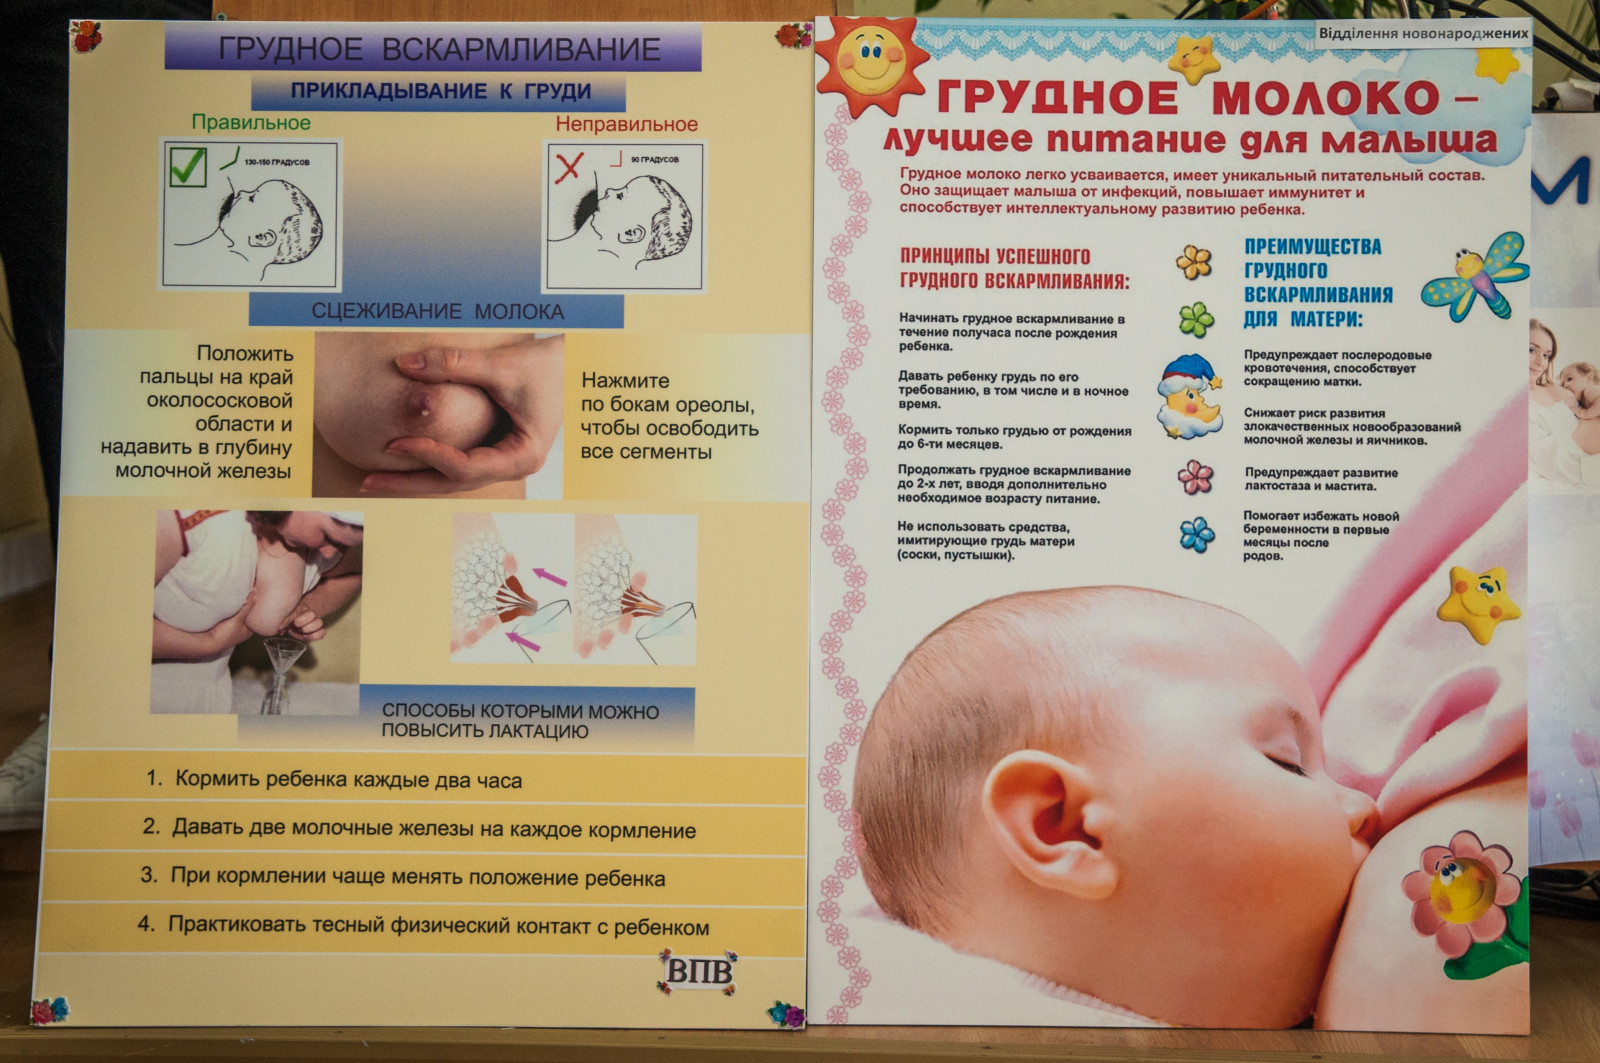 Комаровский кормящие мамы. Рекомендации по грудному вскармливанию новорожденных. Как повысить лактацию. Методы повышения лактации. Увеличить лактацию грудного молока.